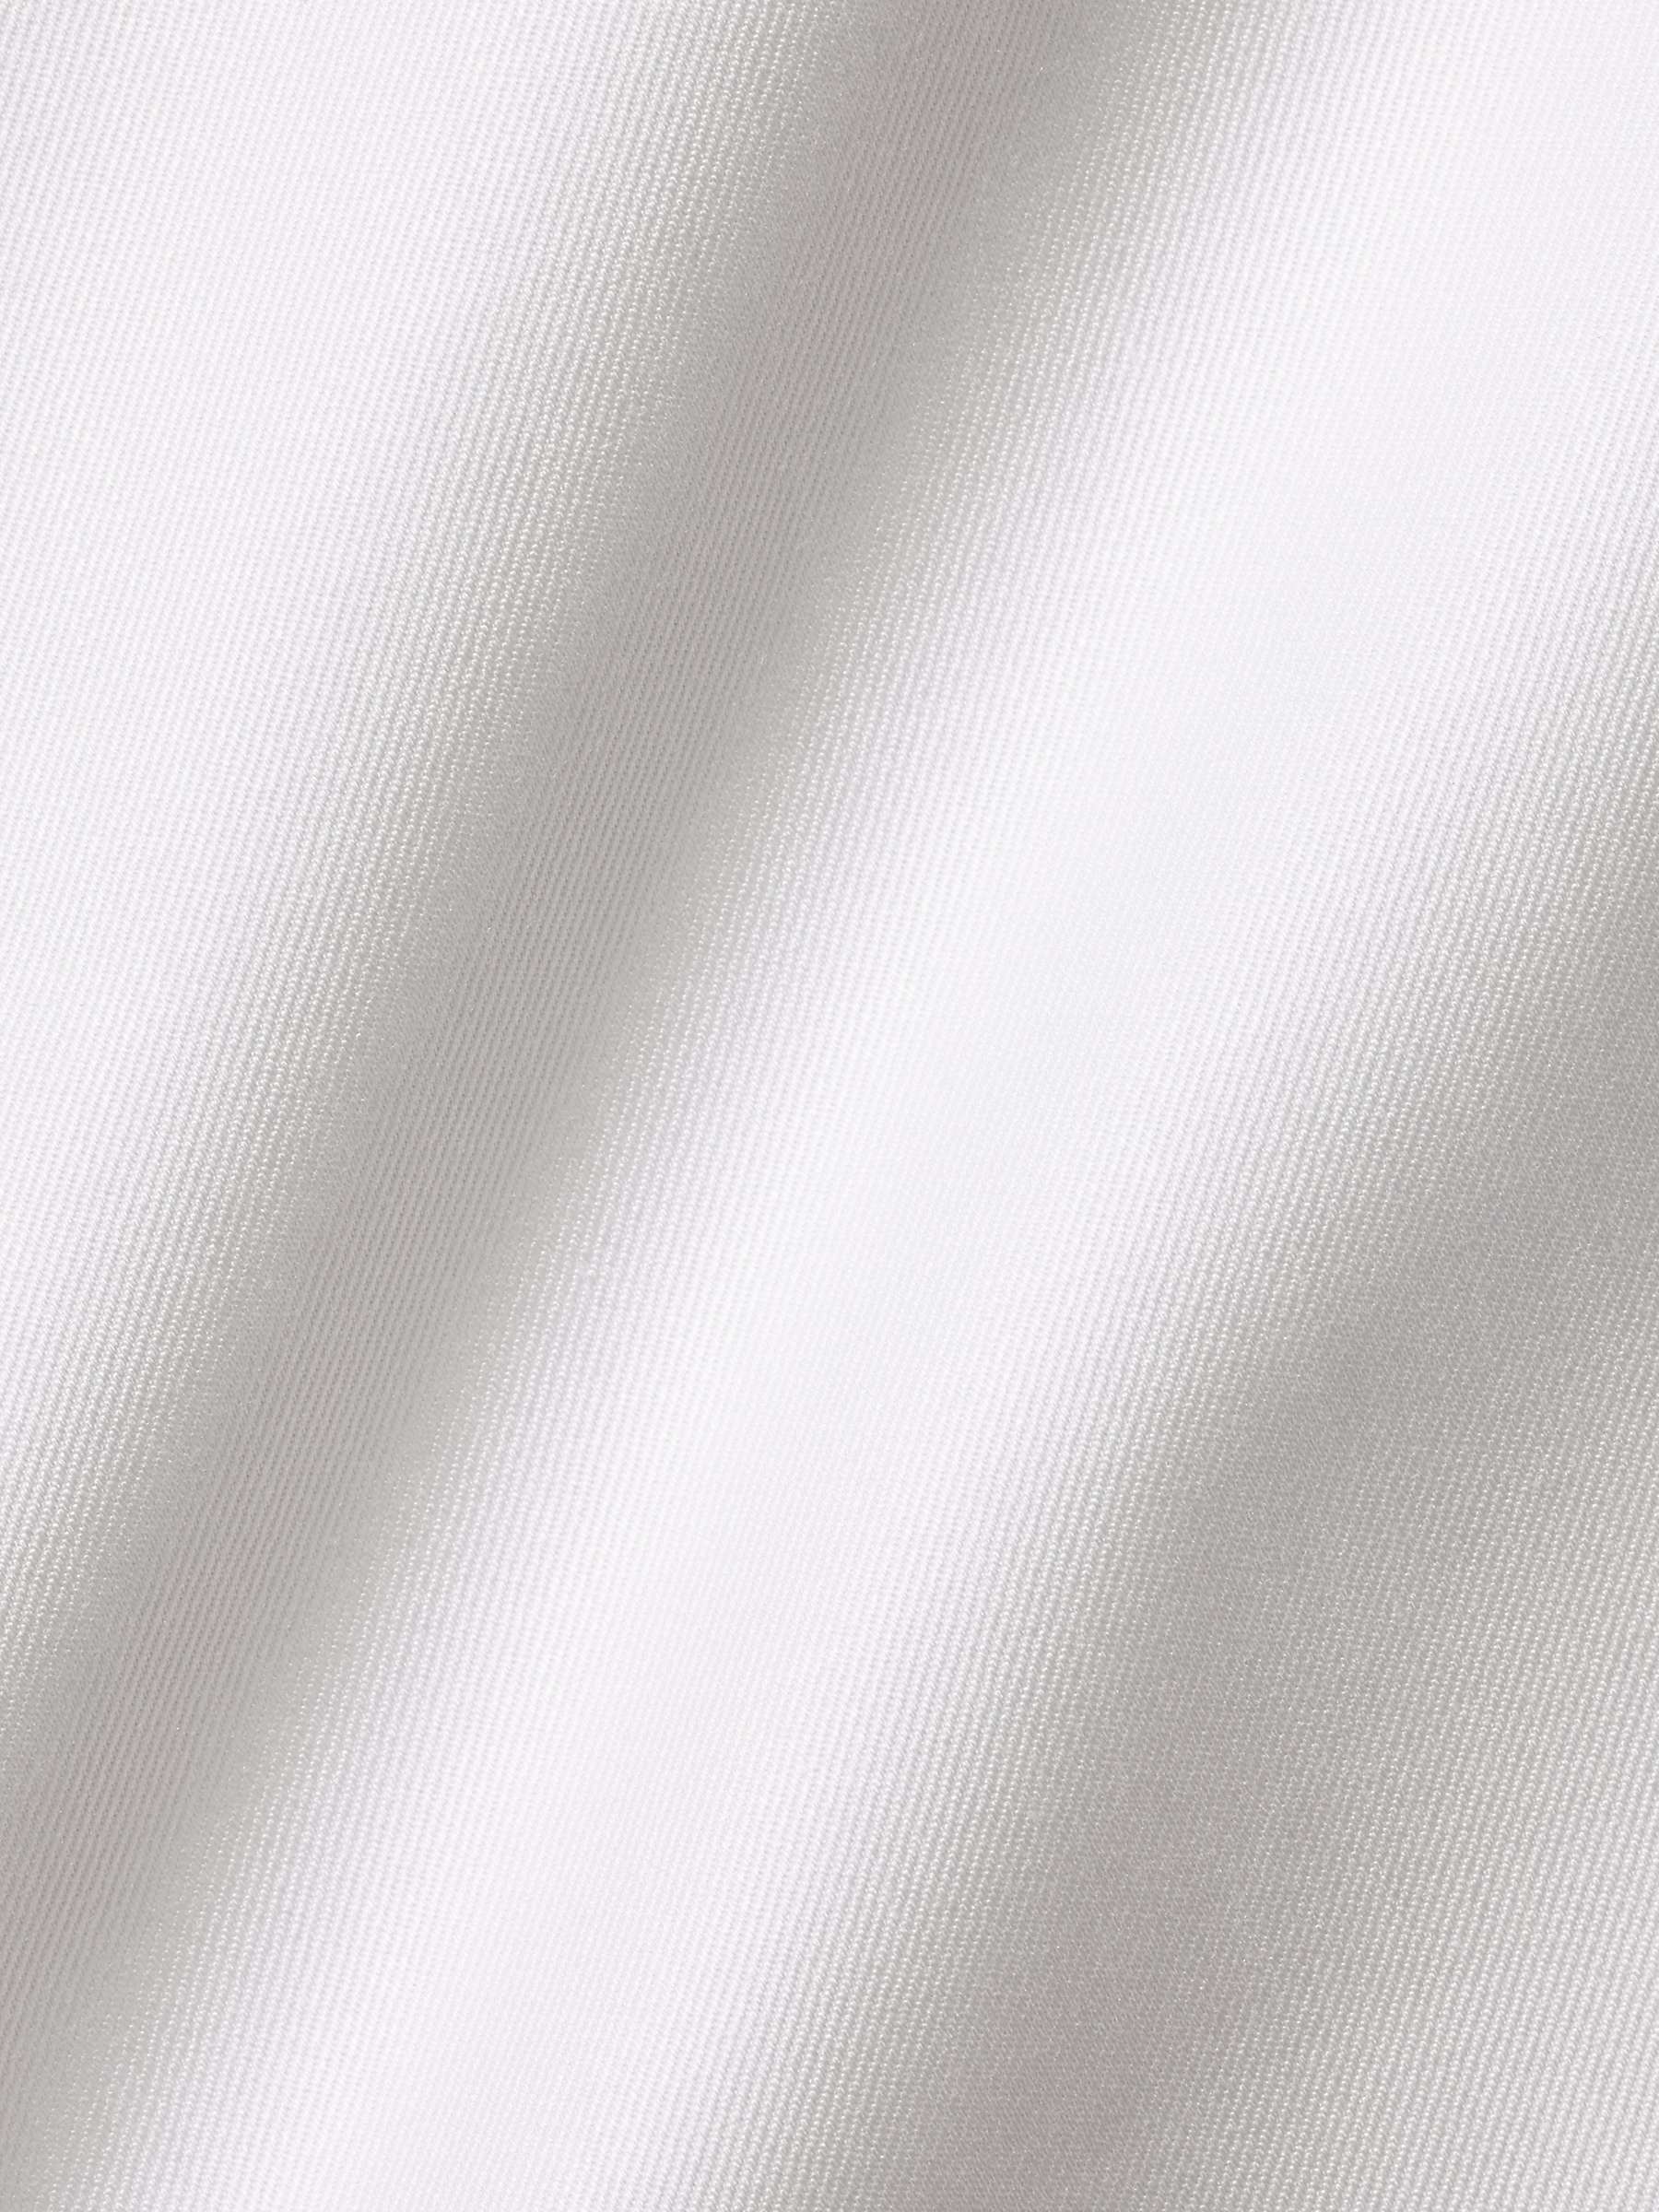 Buy Charles Tyrwhitt Semi-Cutaway Collar Luxury Twill Shirt, White Online at johnlewis.com